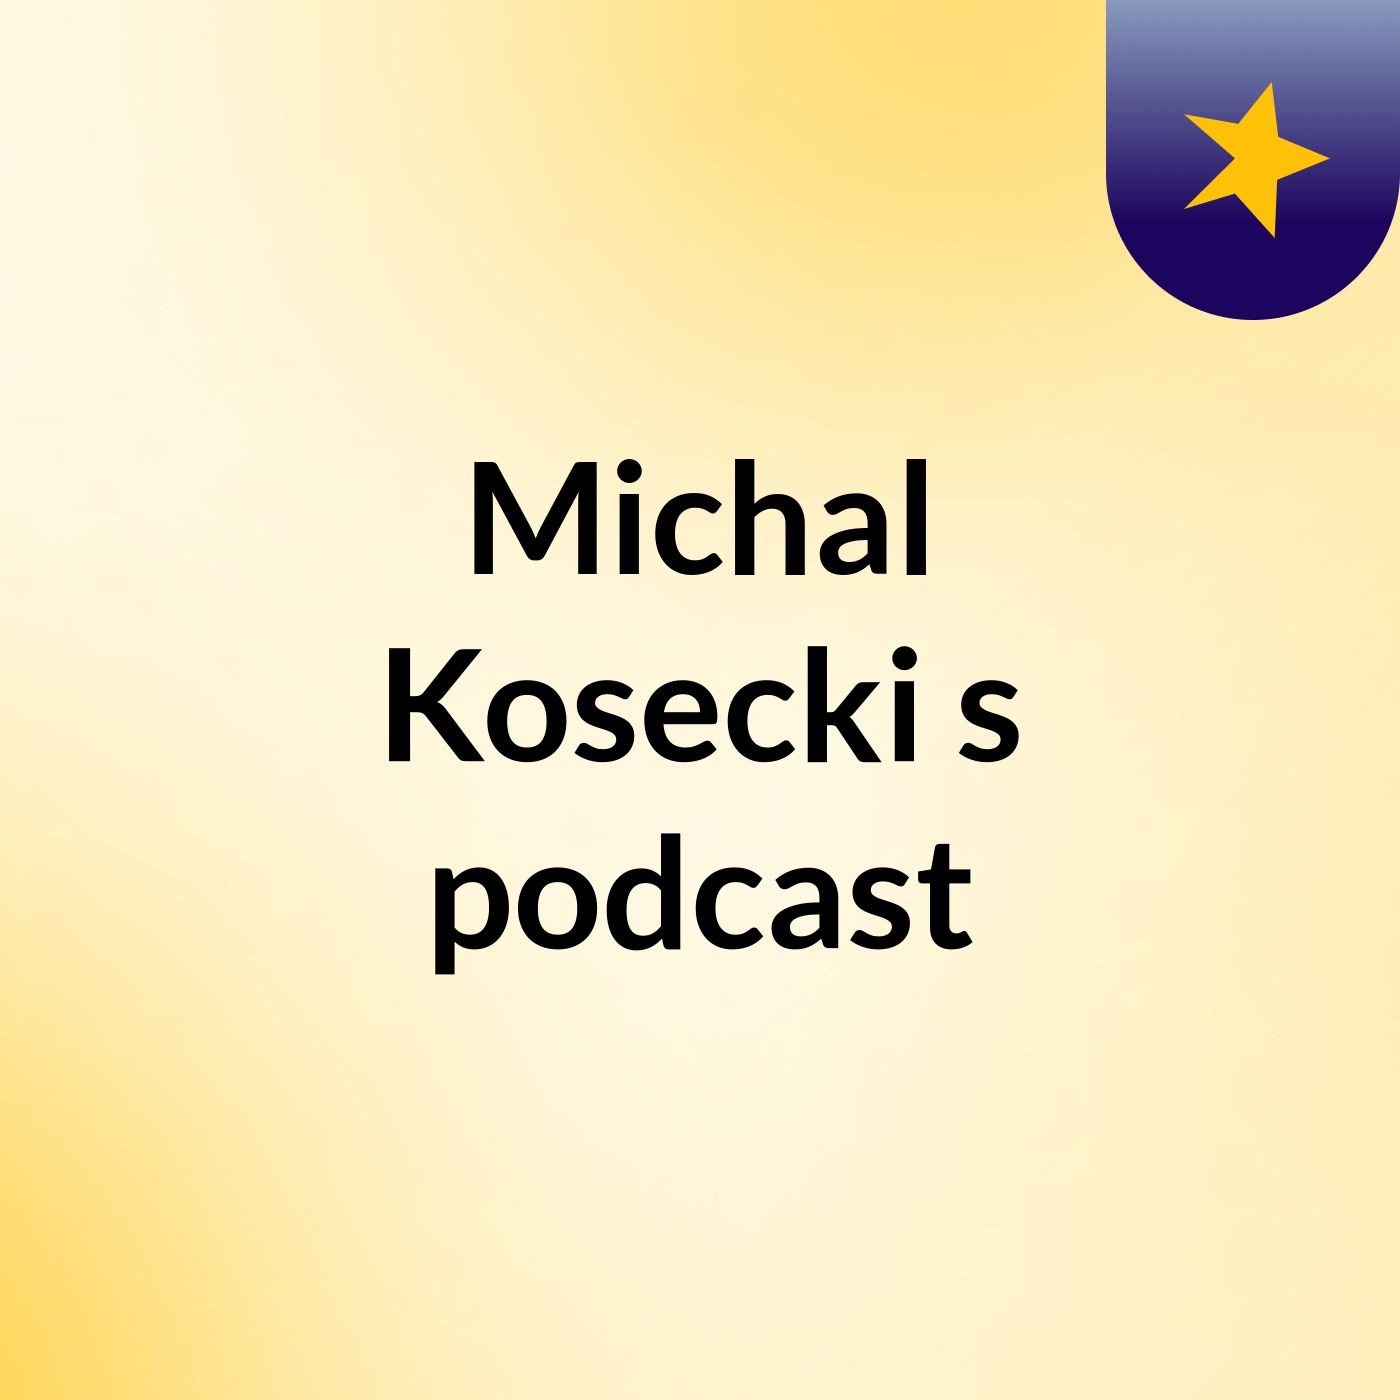 Michal Kosecki's podcast